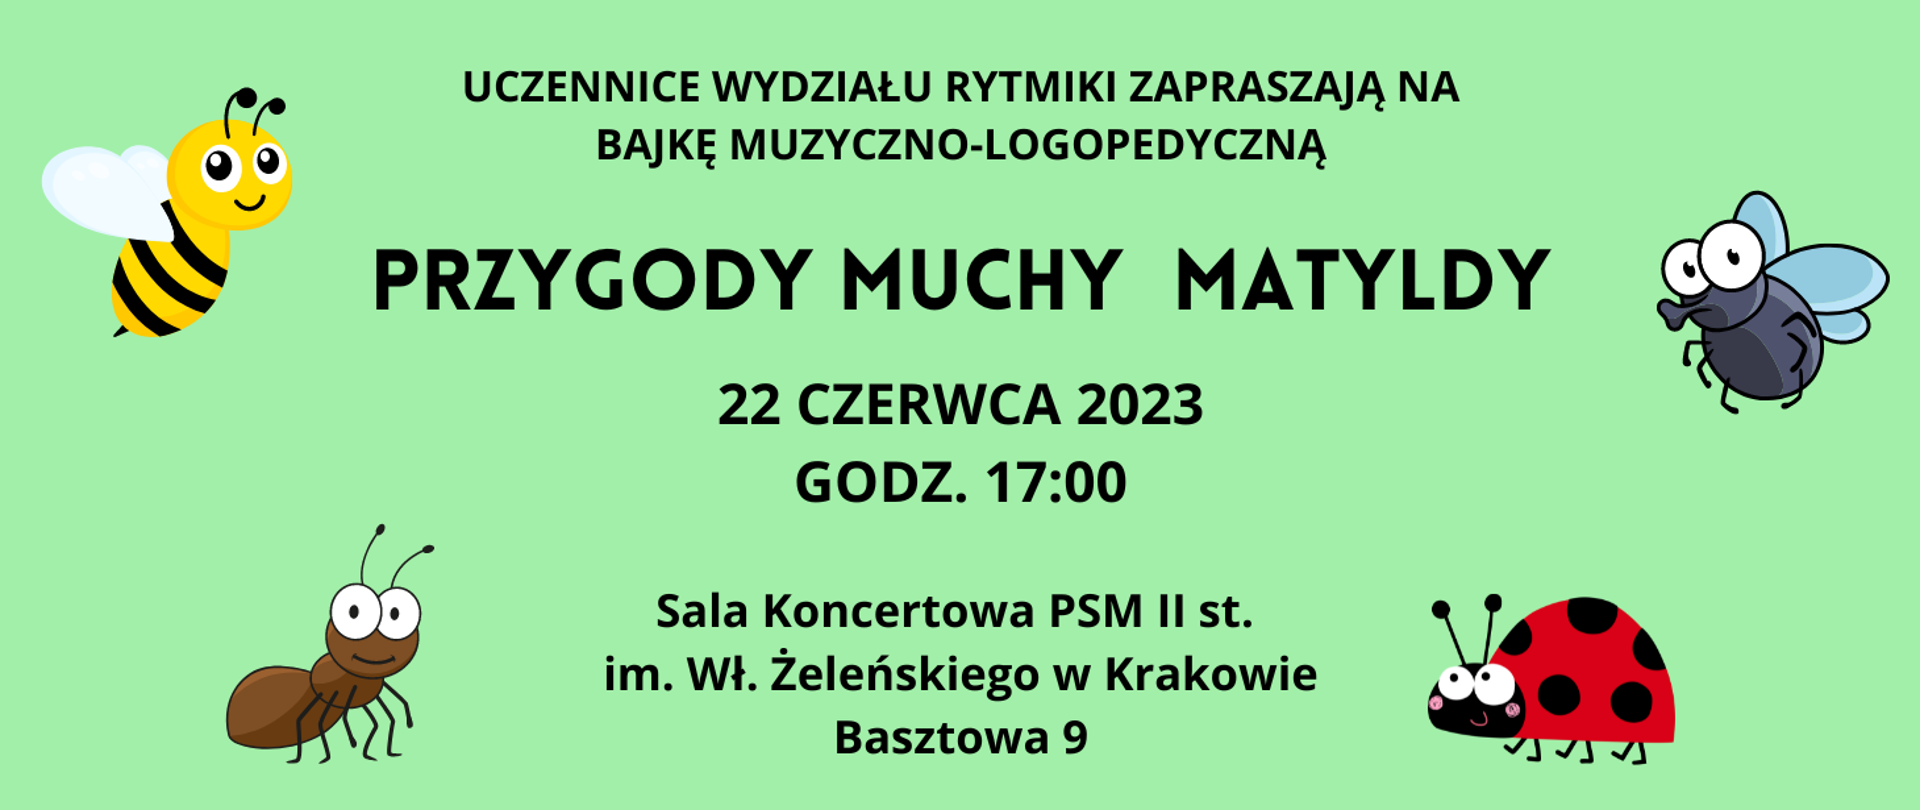 na zielonym tle po bokach obrazki owadów, na środku napis "Przygody Muchy Matyldy" i data 1 czerwca 2023 godz. 10:00 i 11:30 